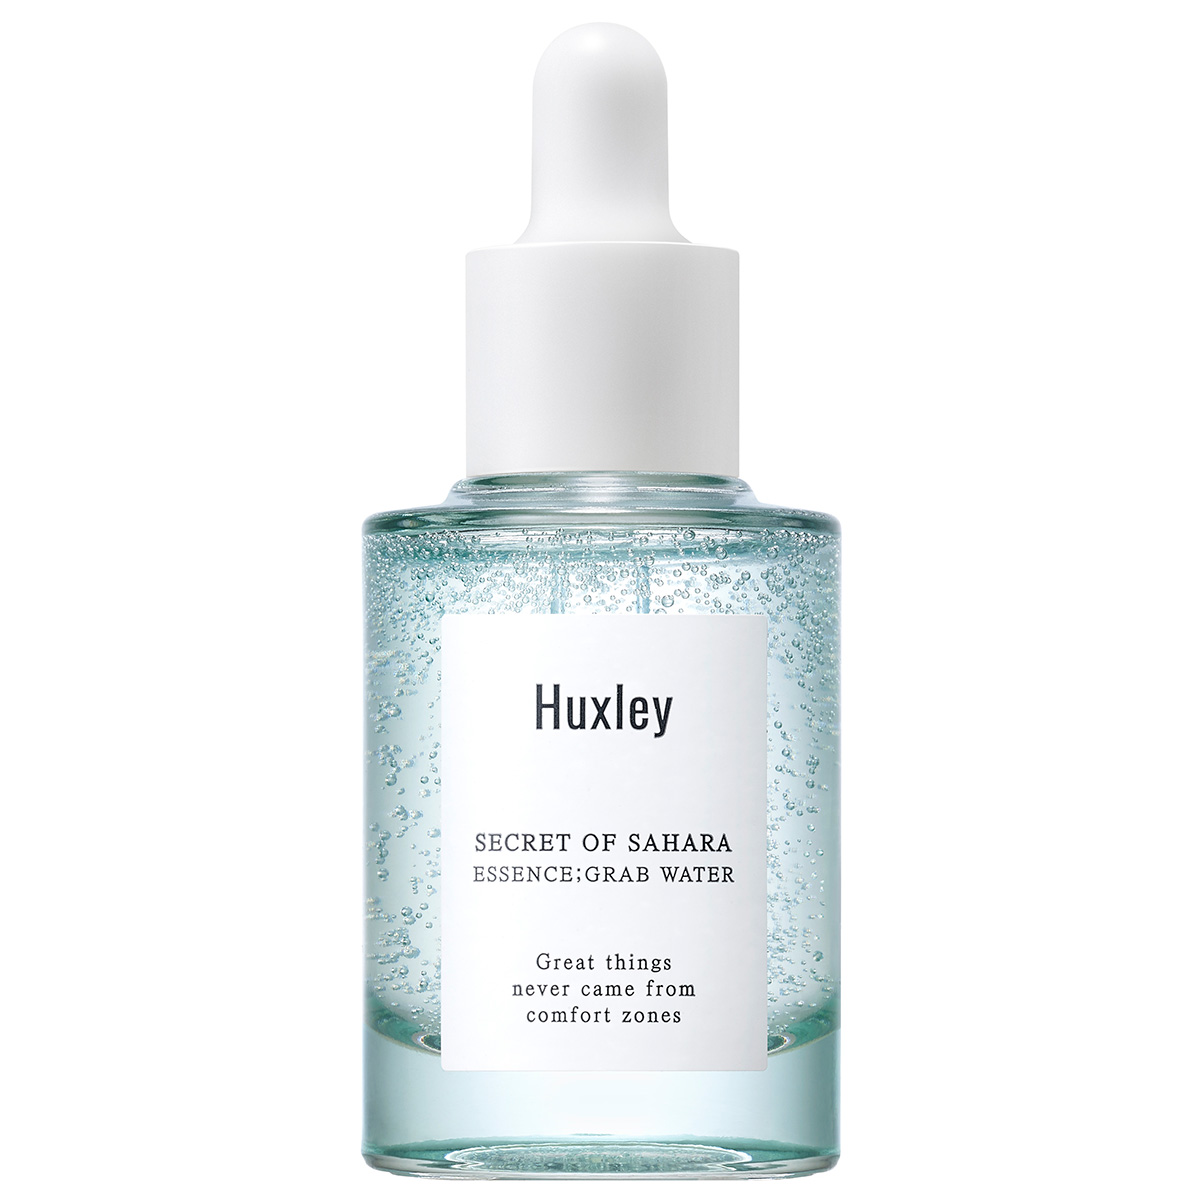 Essence Grab Water, 30 ml Huxley K-Beauty